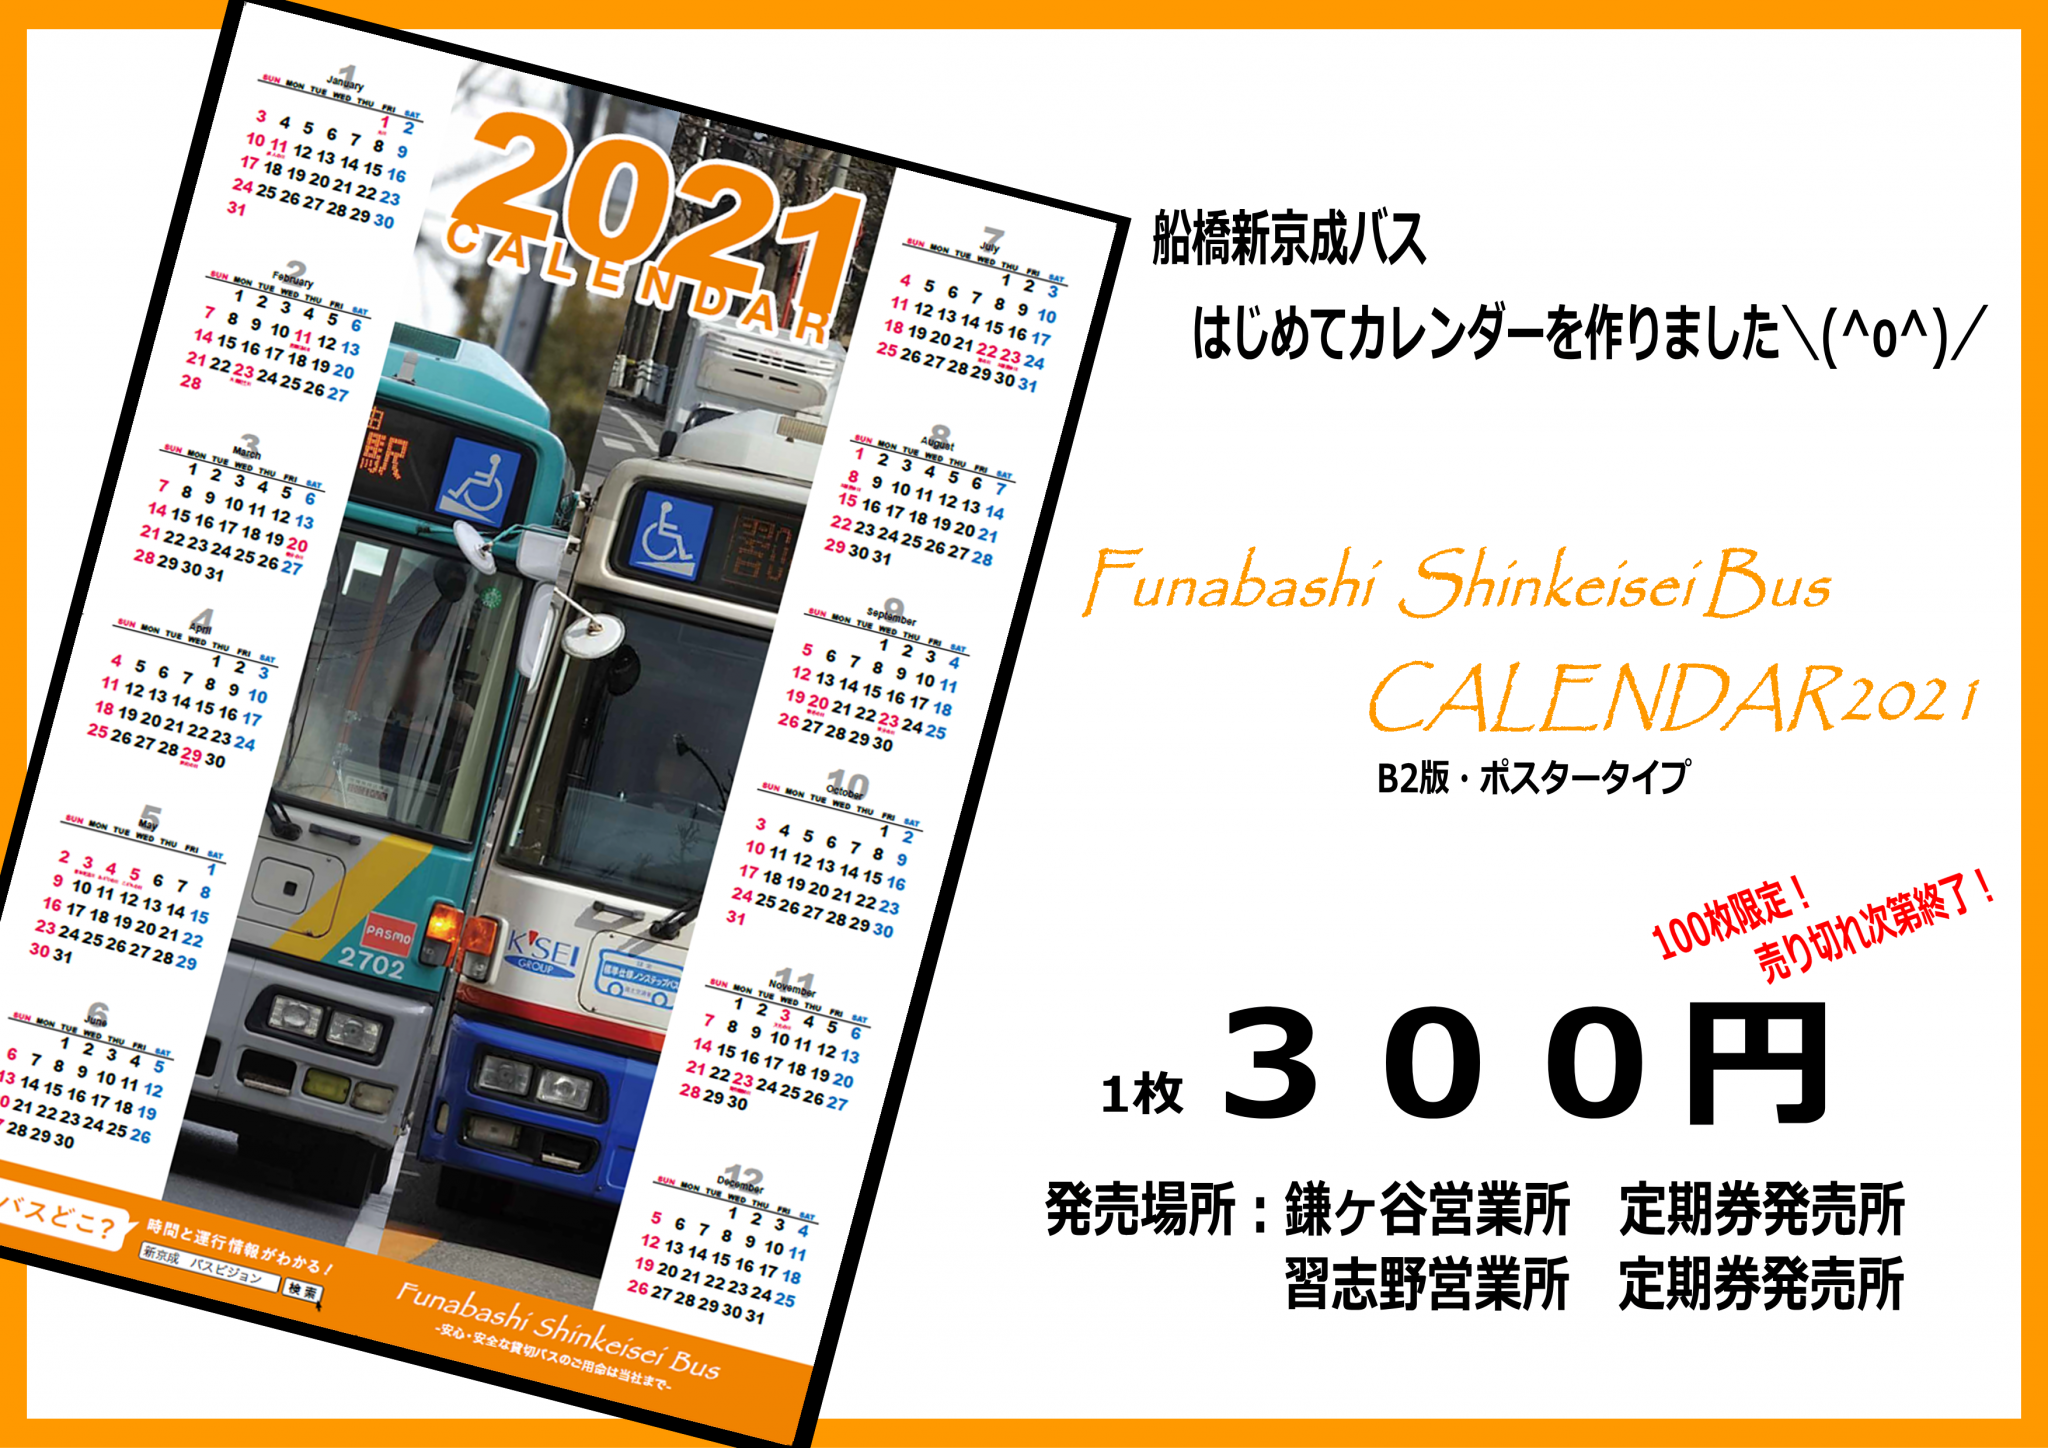 「船橋新京成バスカレンダー2021」を発売